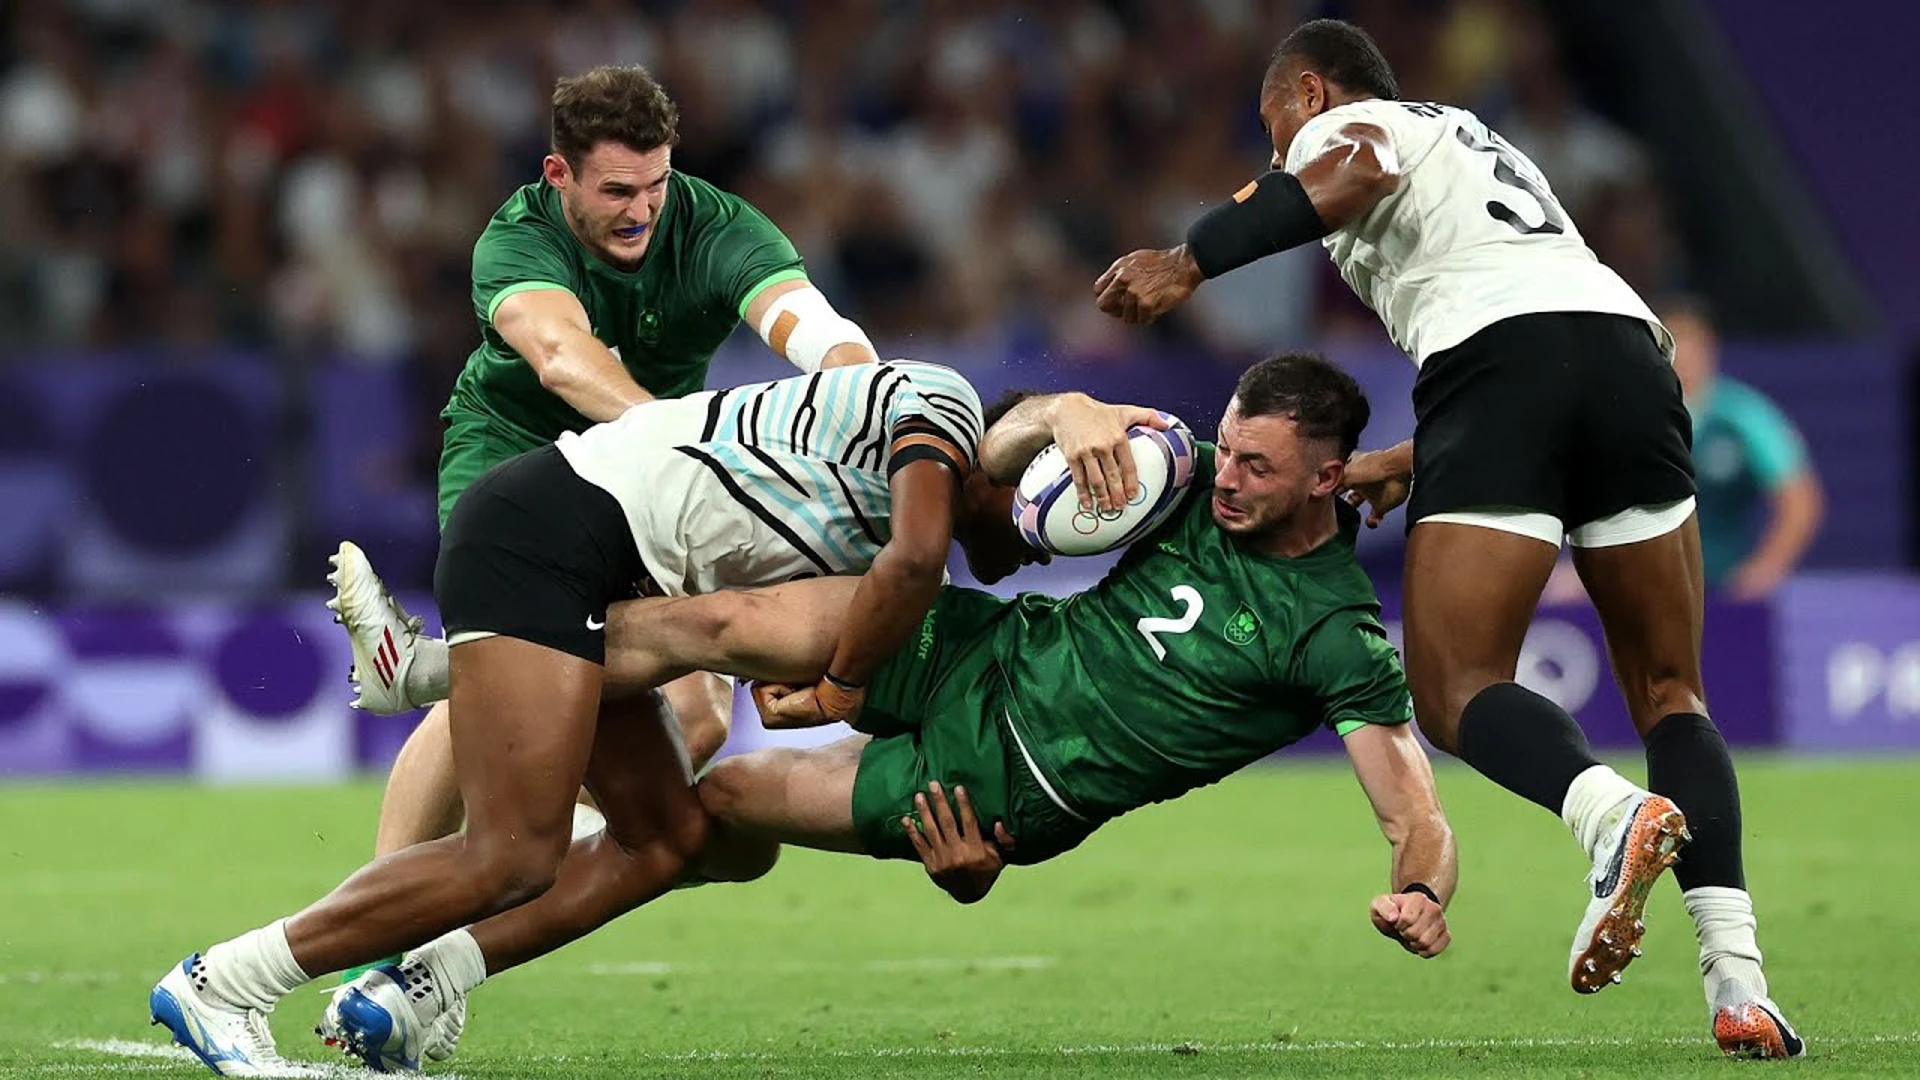 Fiji v Ireland | QF3 Highlights | Paris 2024 Rugby Sevens